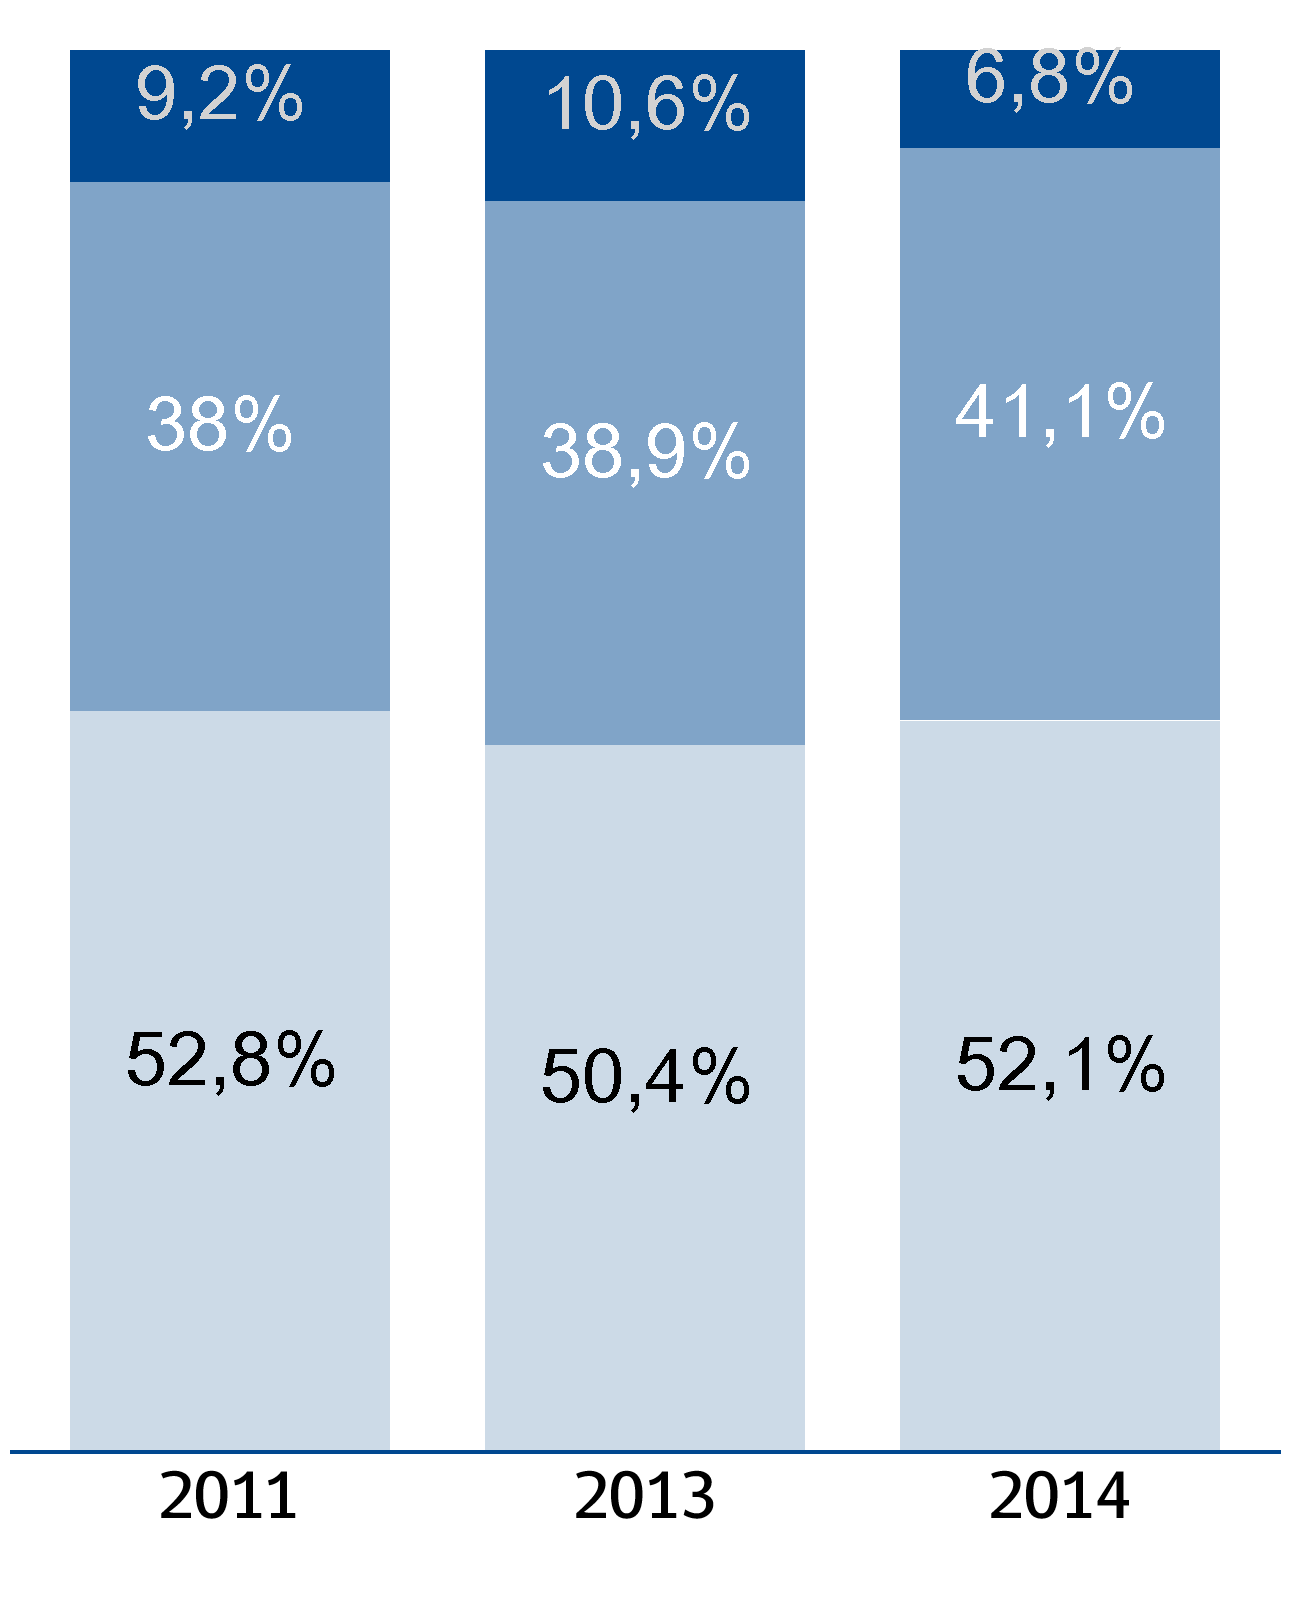 4, la distribución del porcentaje de estudiantes en cada Nivel de Aprendizaje para la prueba de Historia, Geografía y Ciencias Sociales 2014-2011. Figura 1.